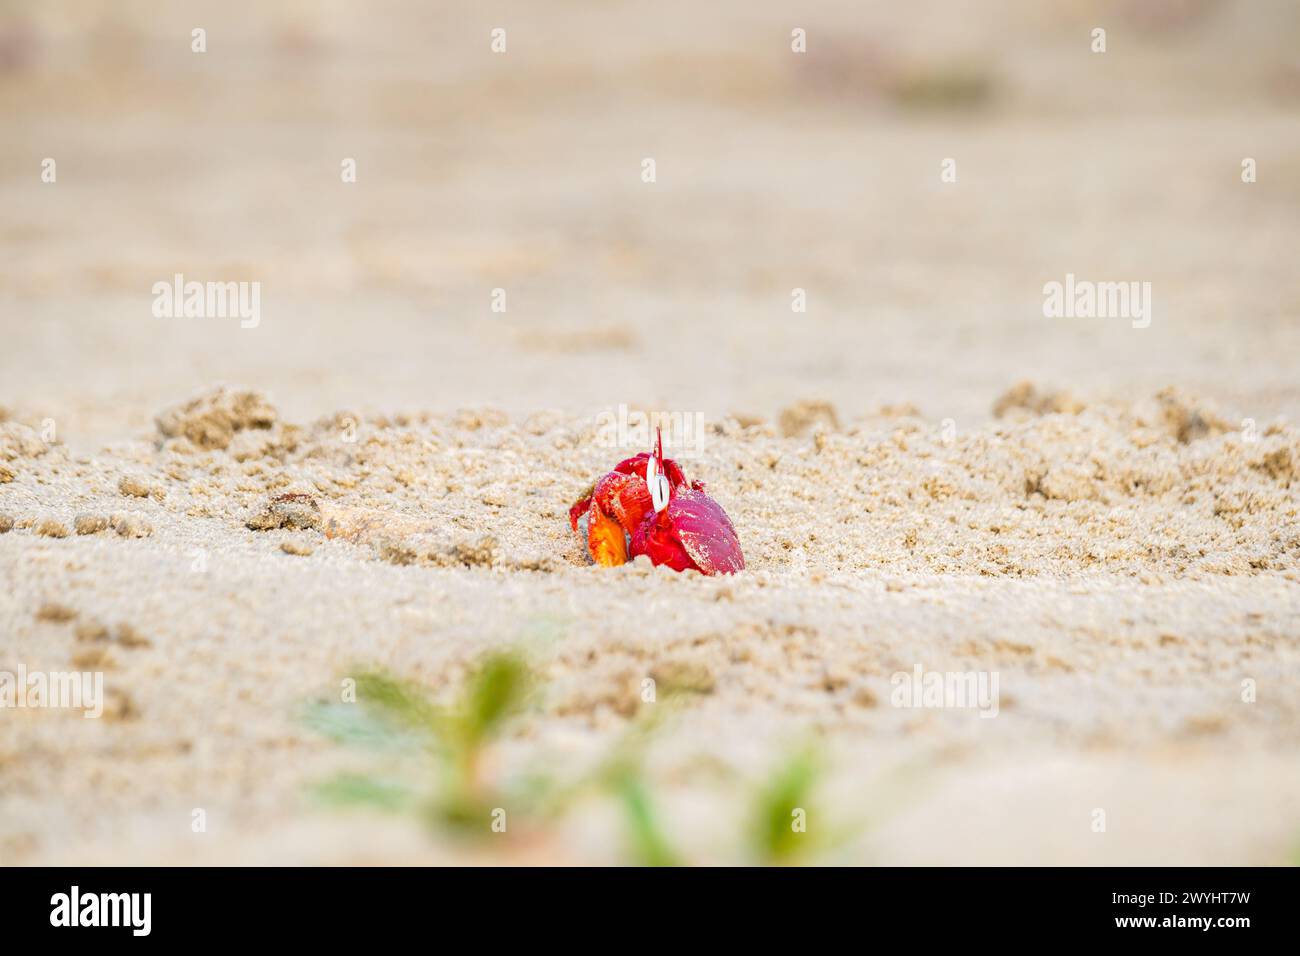 Crabe fantôme rouge ou macrocères d'ocypodes qui sortent de son terrier sablonneux pendant la journée. C'est un charbonnier qui creuse un trou à l'intérieur de plages de sable et de zones de marée Banque D'Images